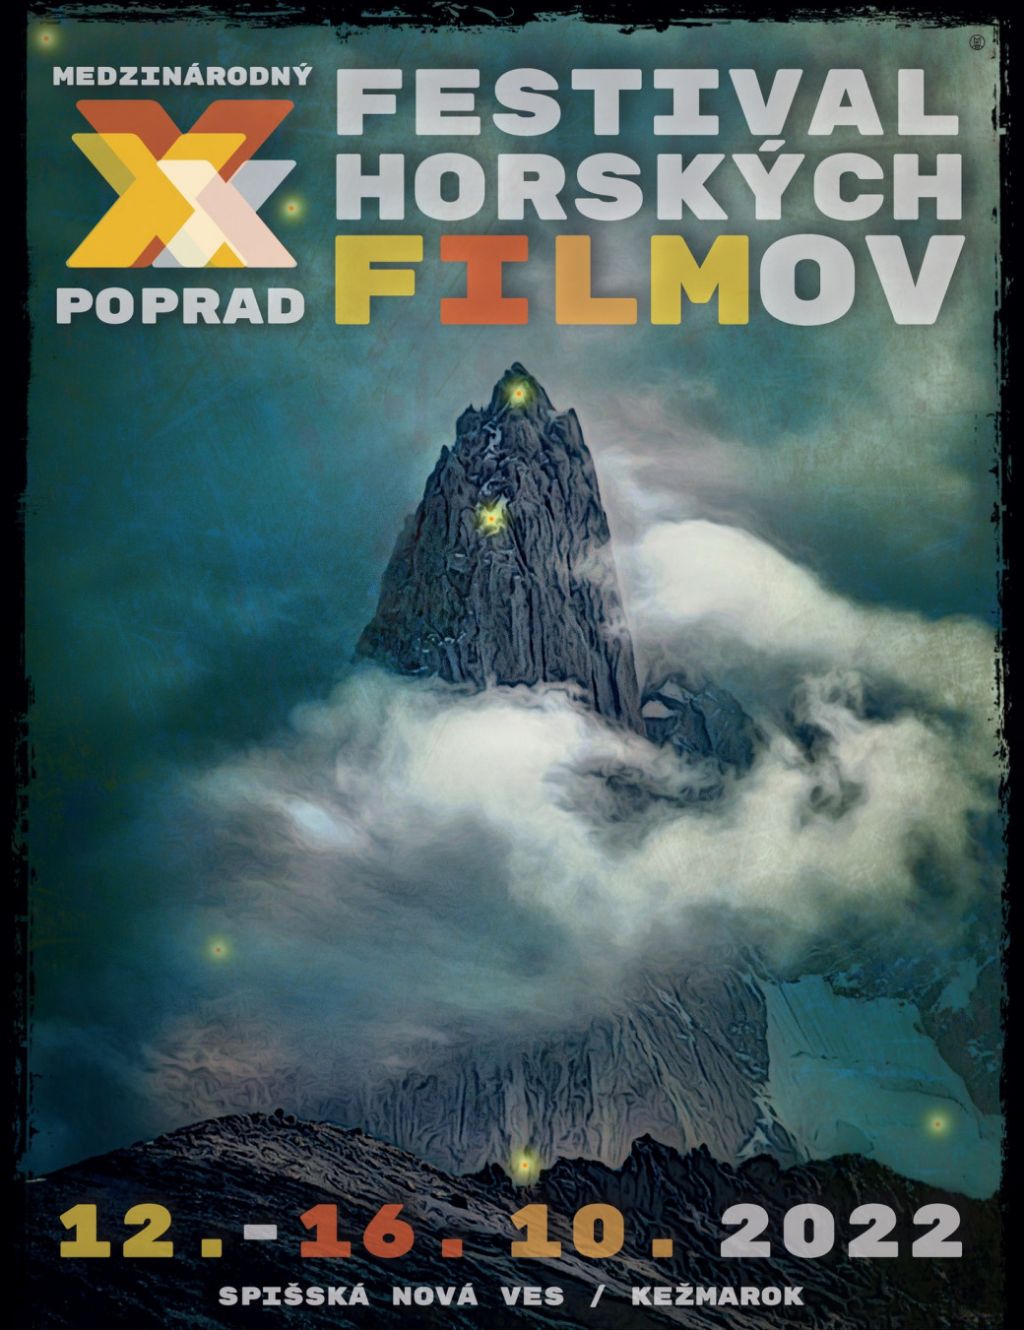 Medzinárodný festival horských filmov 2022 | spisskanovaves.eu